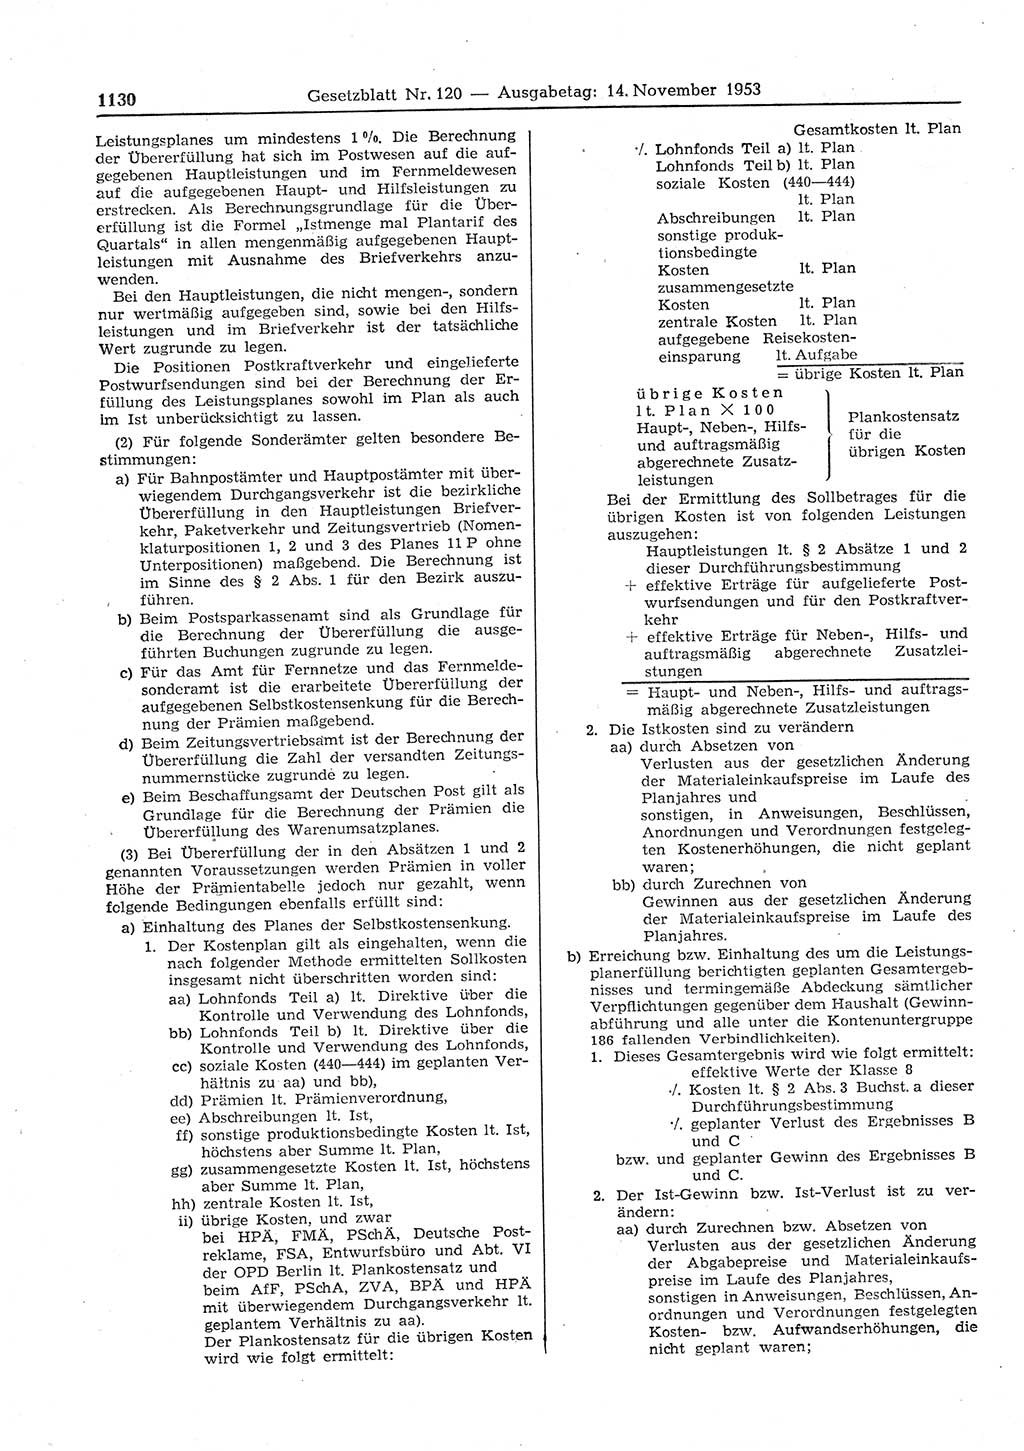 Gesetzblatt (GBl.) der Deutschen Demokratischen Republik (DDR) 1953, Seite 1130 (GBl. DDR 1953, S. 1130)